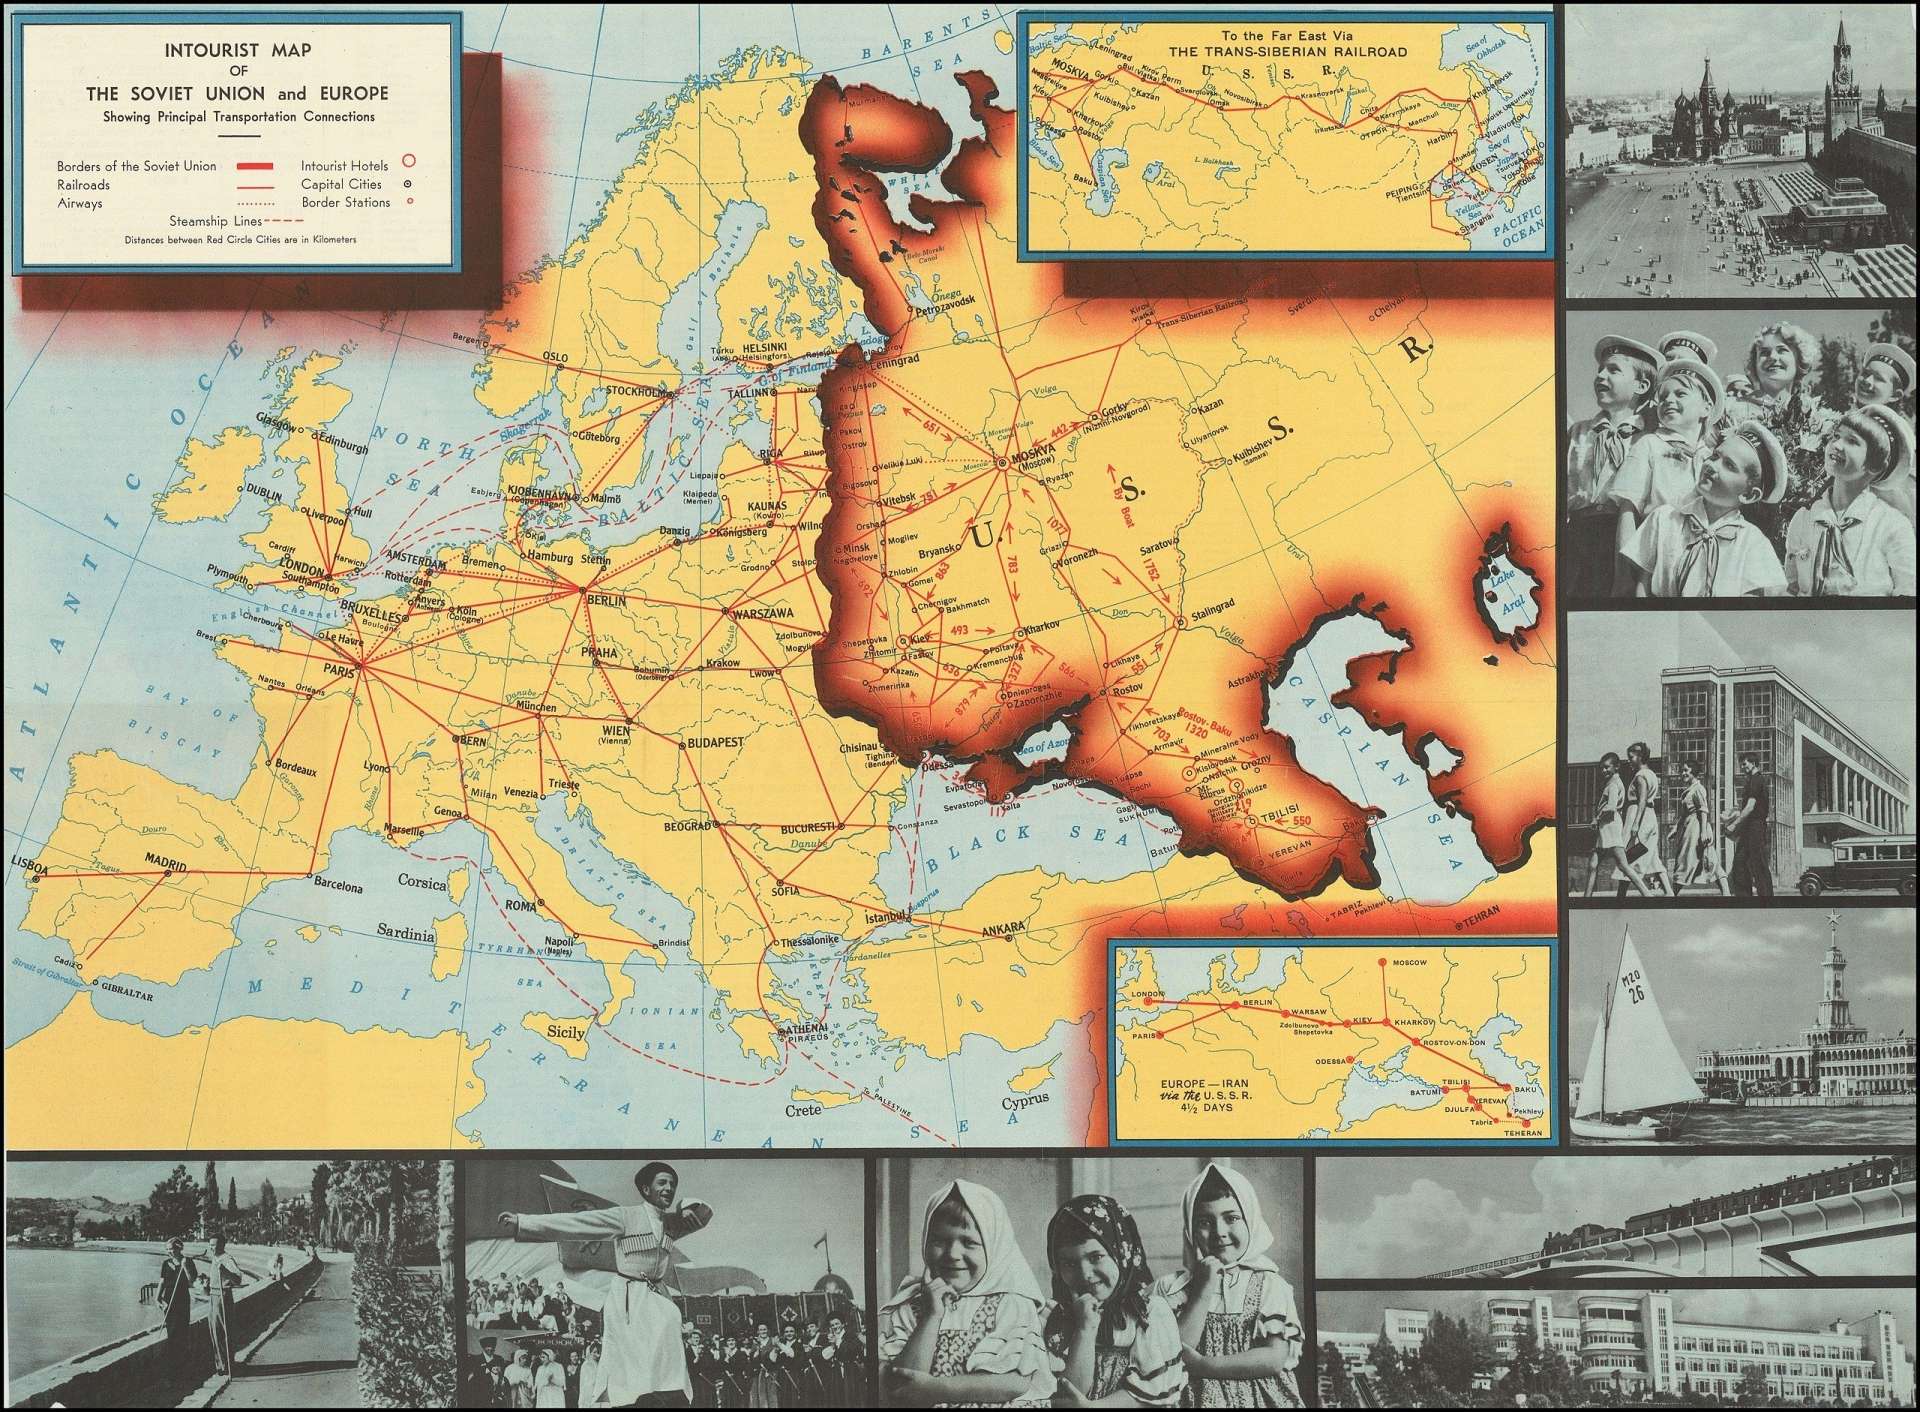 Affiche Intourist de 1939 publiée à New York, auteur inconnu : "Intourist map of the Soviet Union showing principal transportation connections".